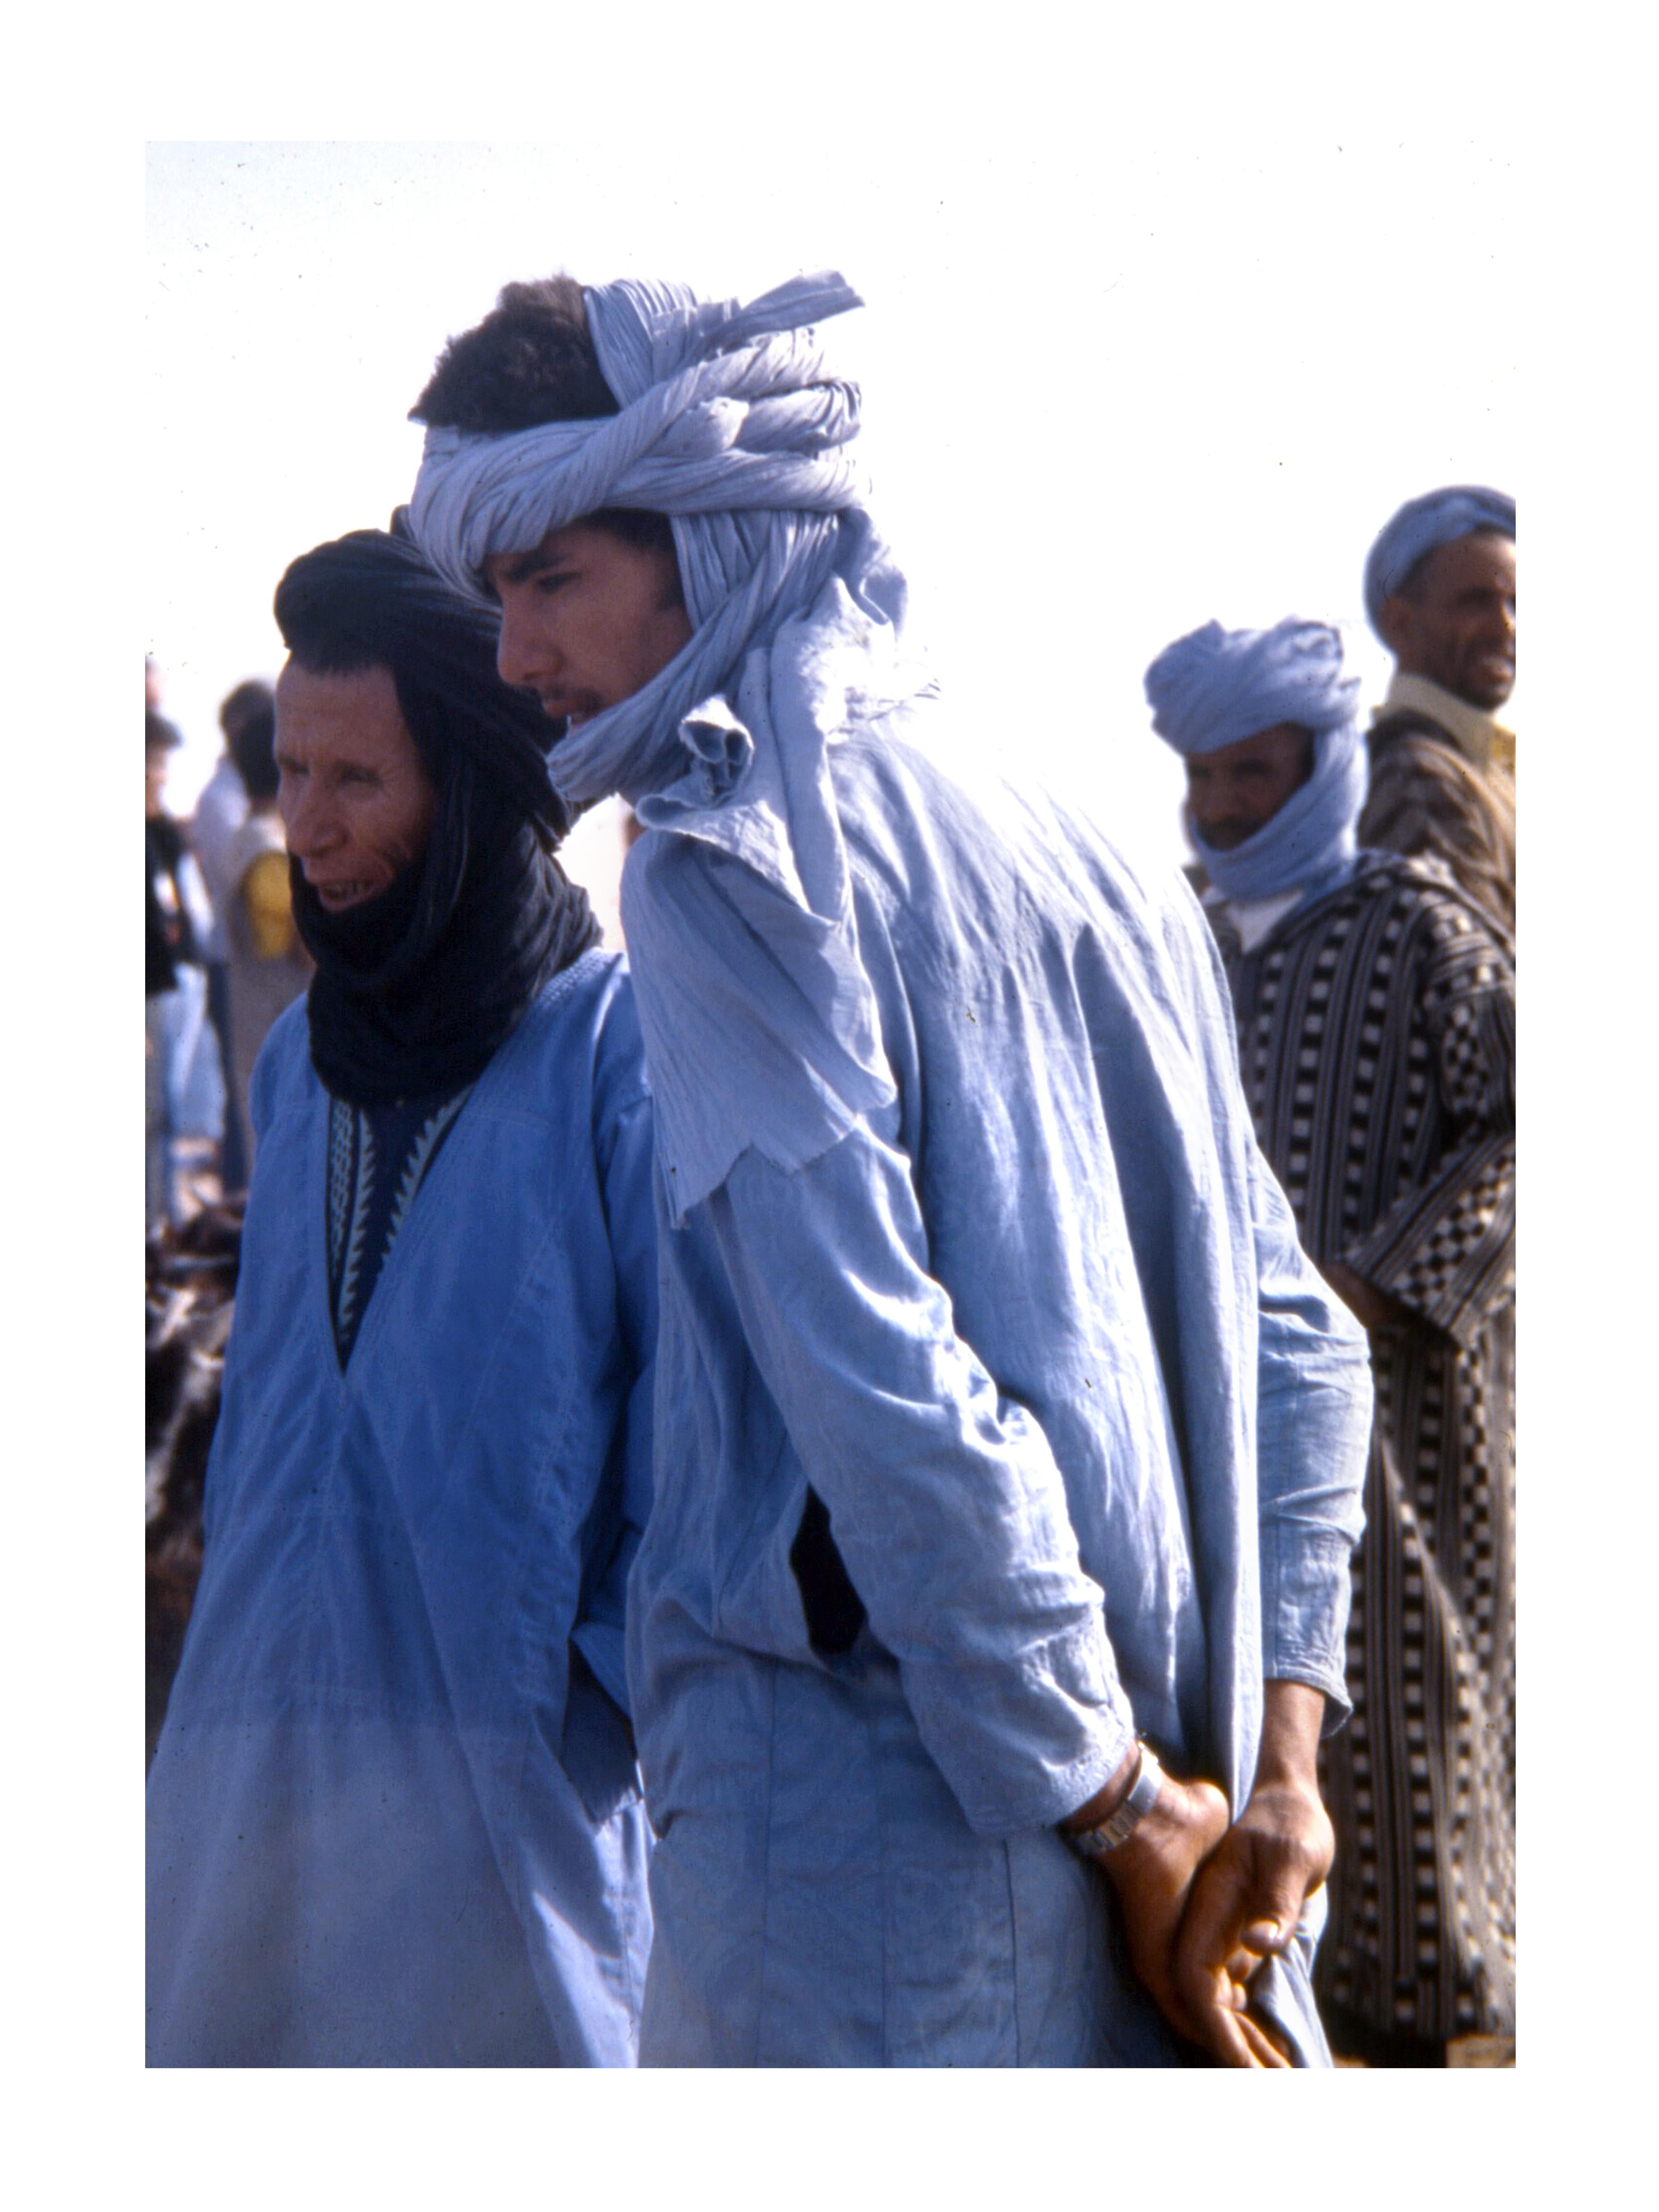 Richard Shay Color Photograph – Indigofarbene Herren in Guelmim, Marokko-Markt, 1979  - Farbfotografie, mattiert und gerahmt